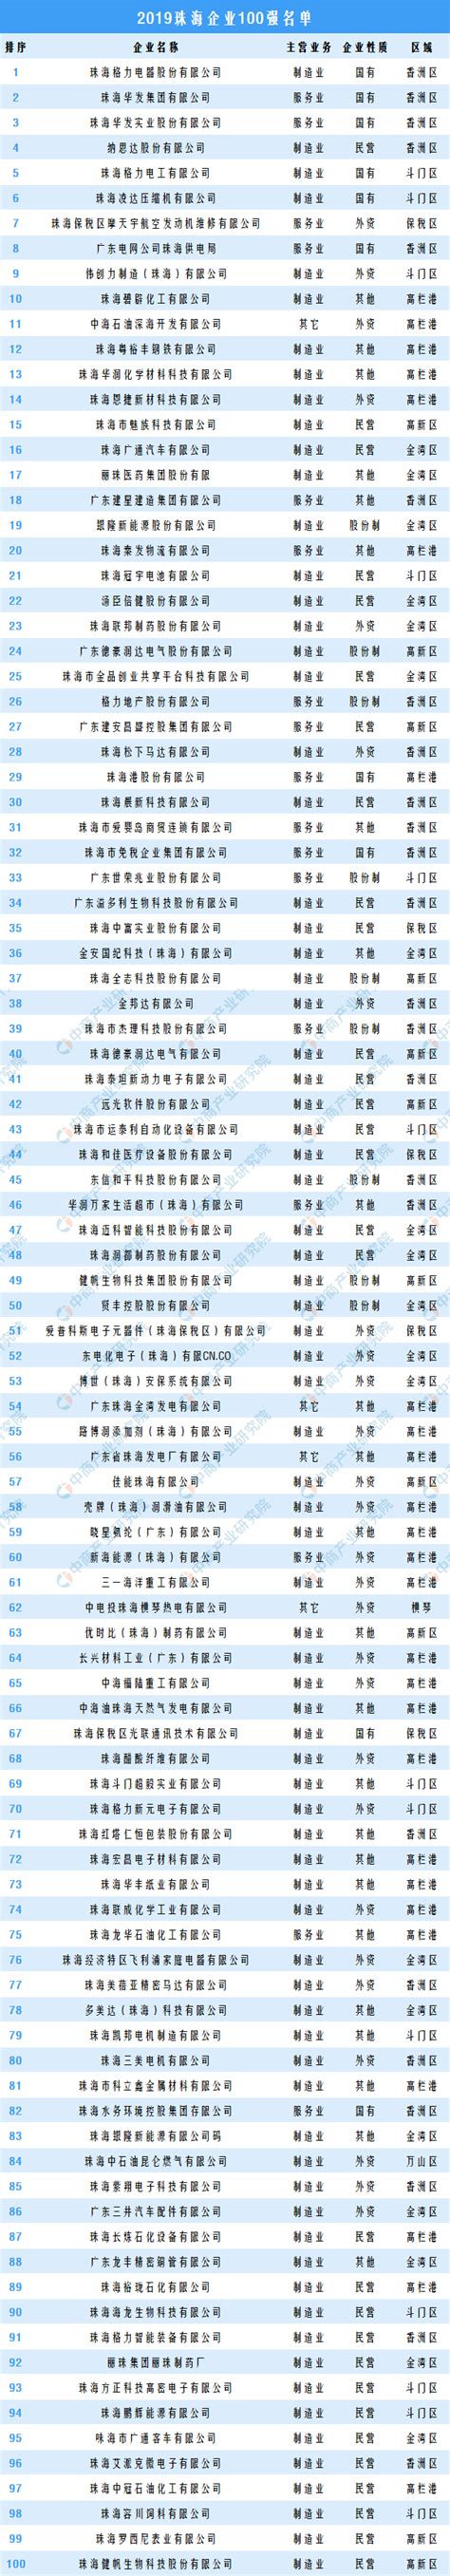 2019年珠海企业100强排行榜-产业排行榜-排行榜-中商情报网